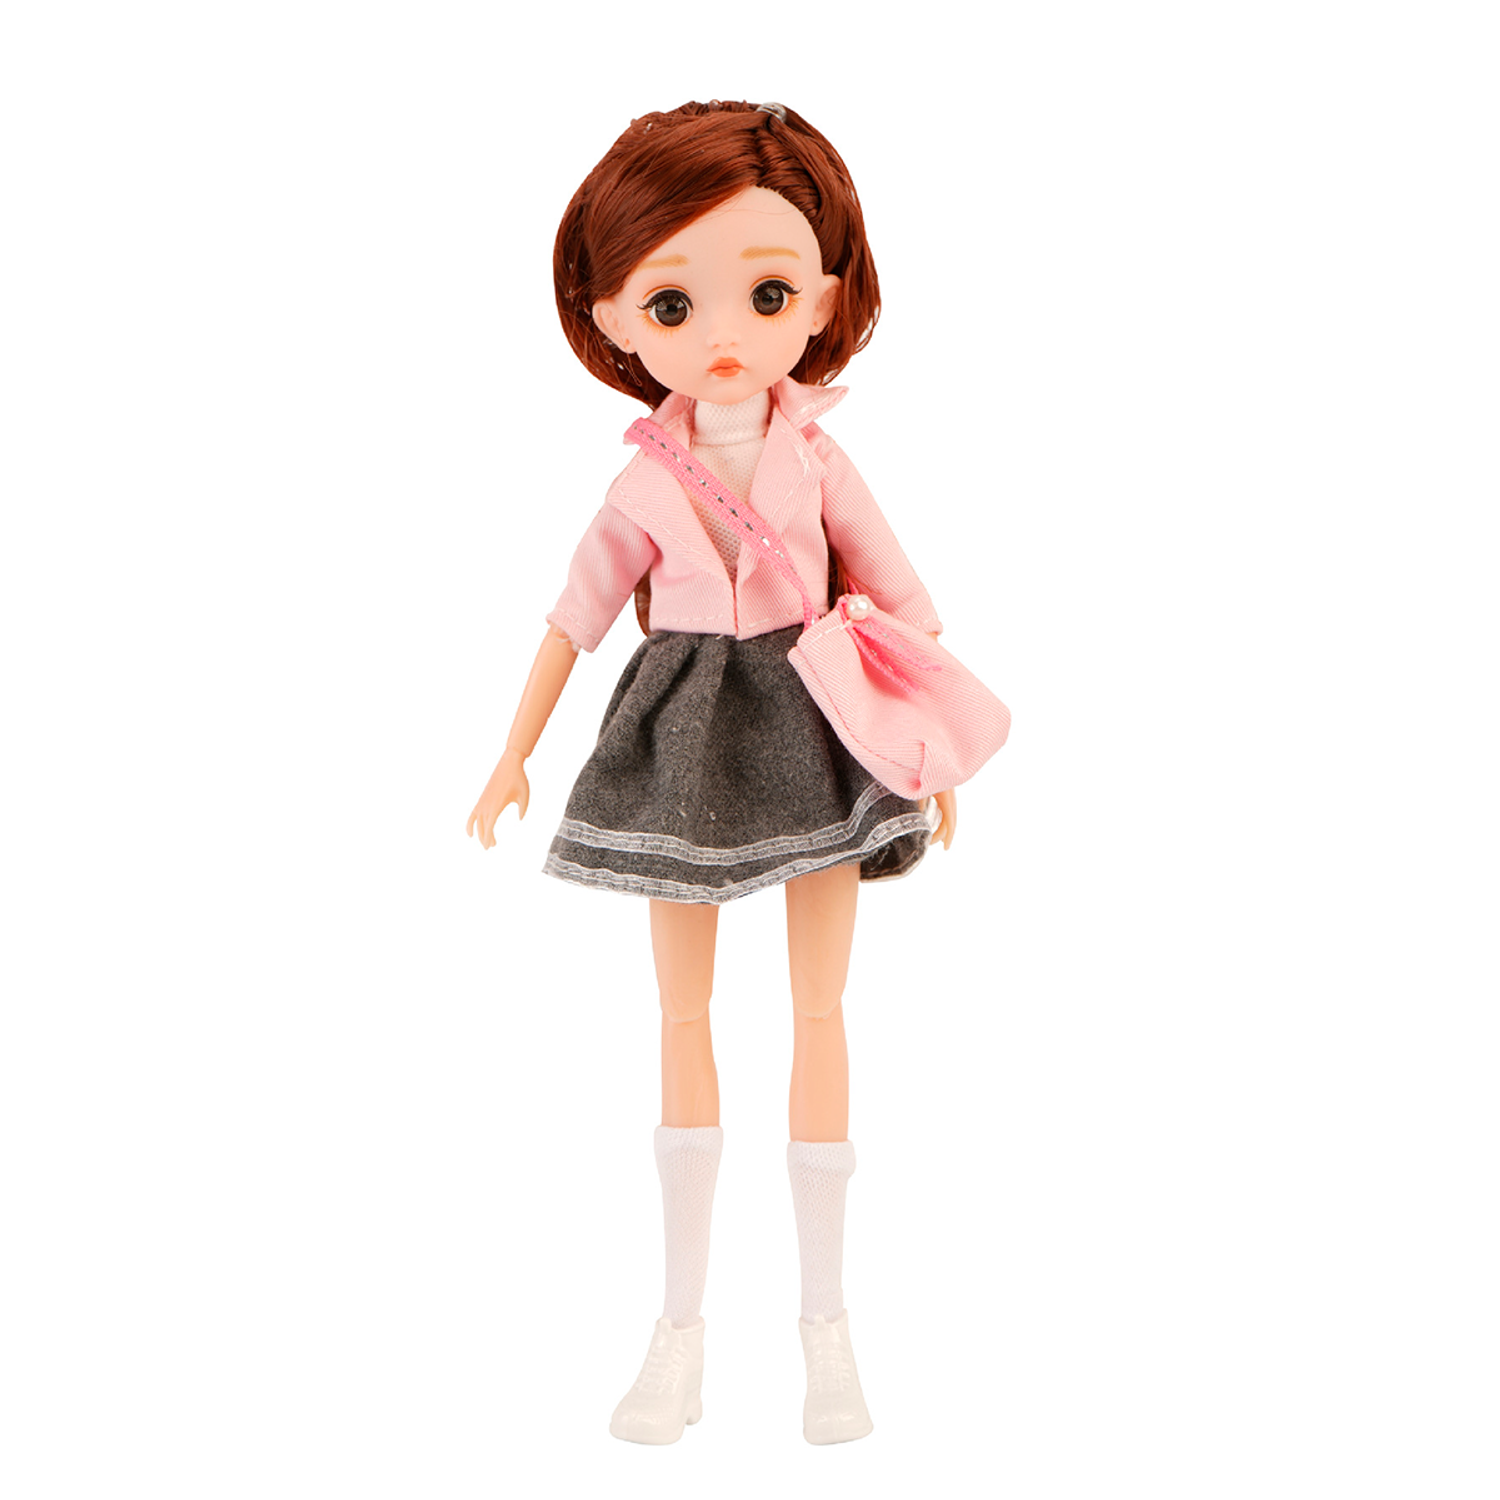 Коллекционная шарнирная кукла WiMI Bjd с большими глазами одеждой и аксессуарами с длинными волосами для девочек 26 см 149720071 - фото 2